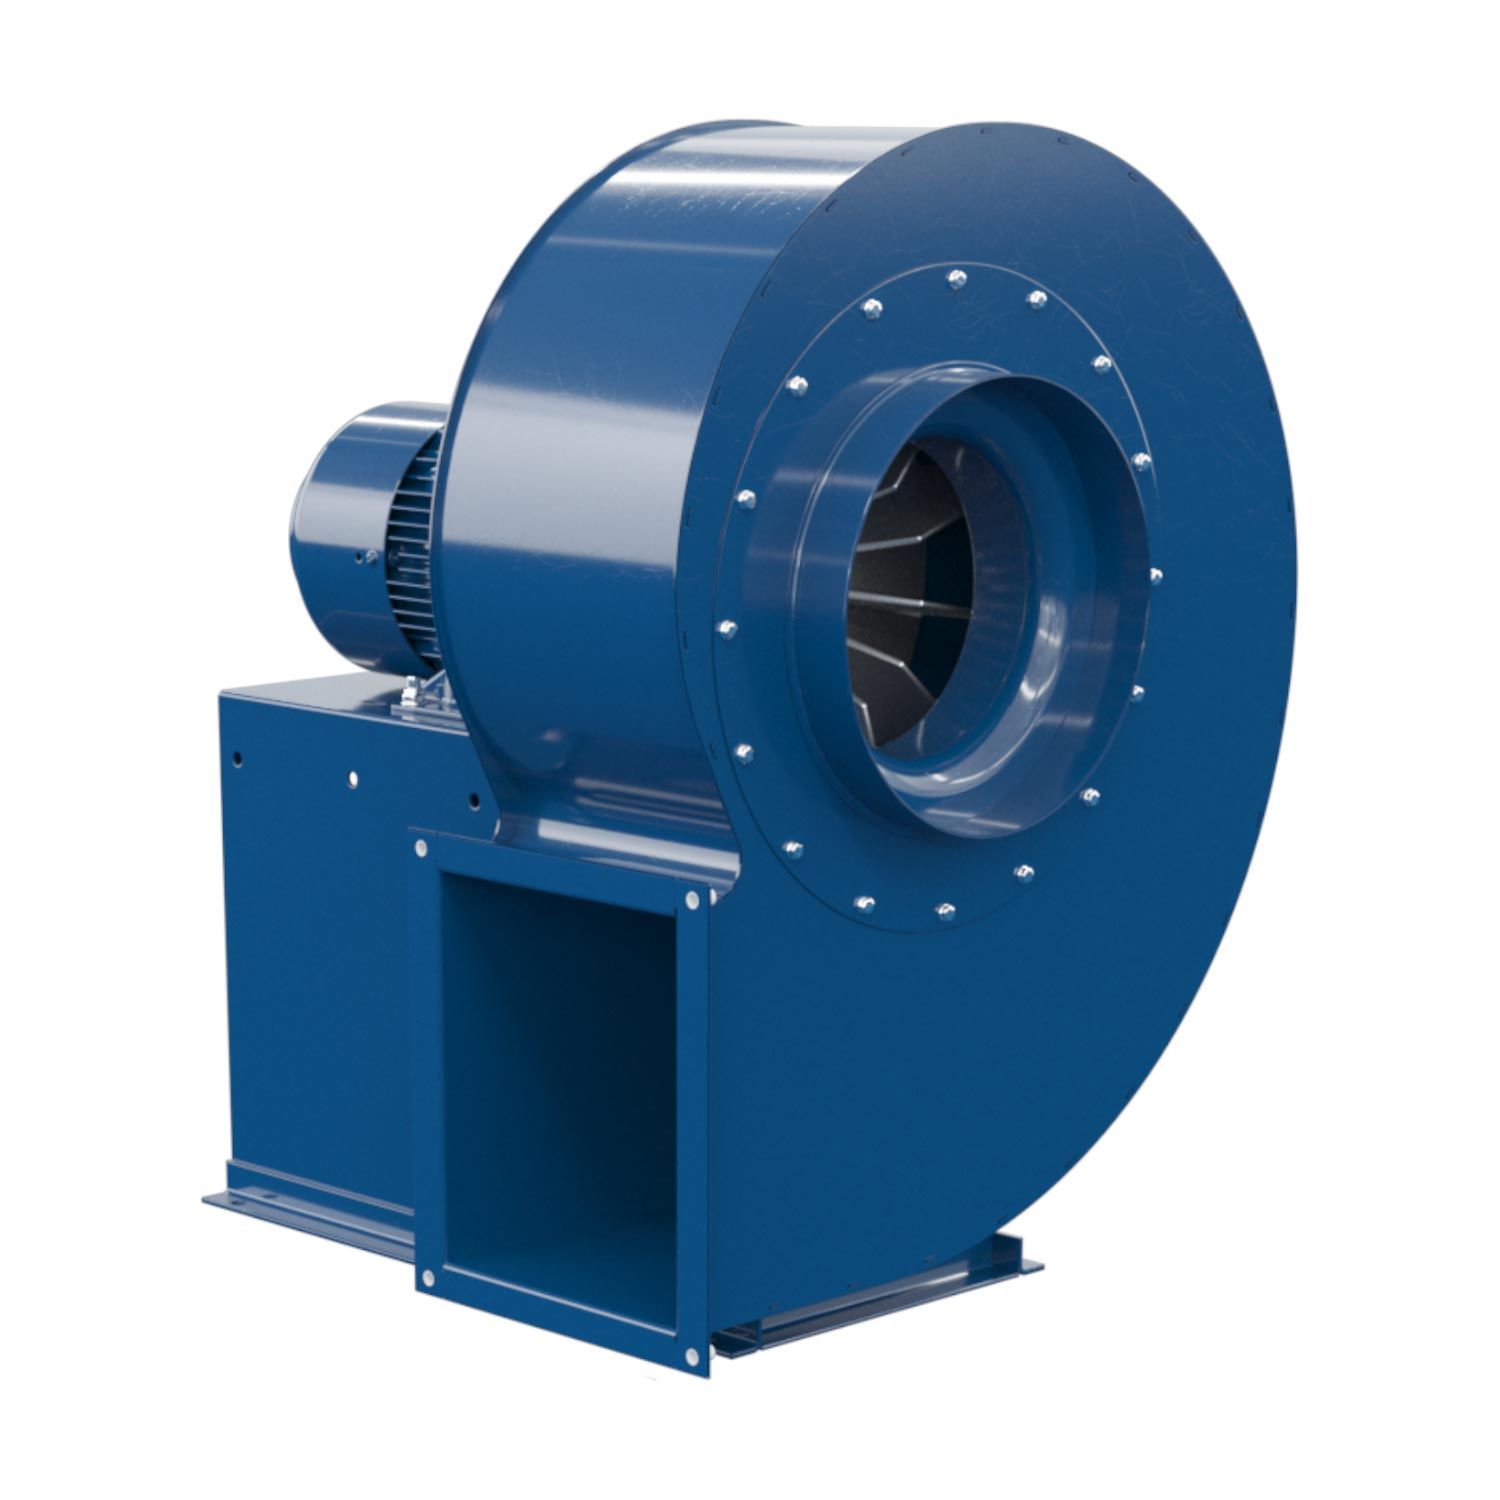 Ft 10001 - ventilateur centrifuge industriel - fumex - puissance nominale 0,55 kw_0